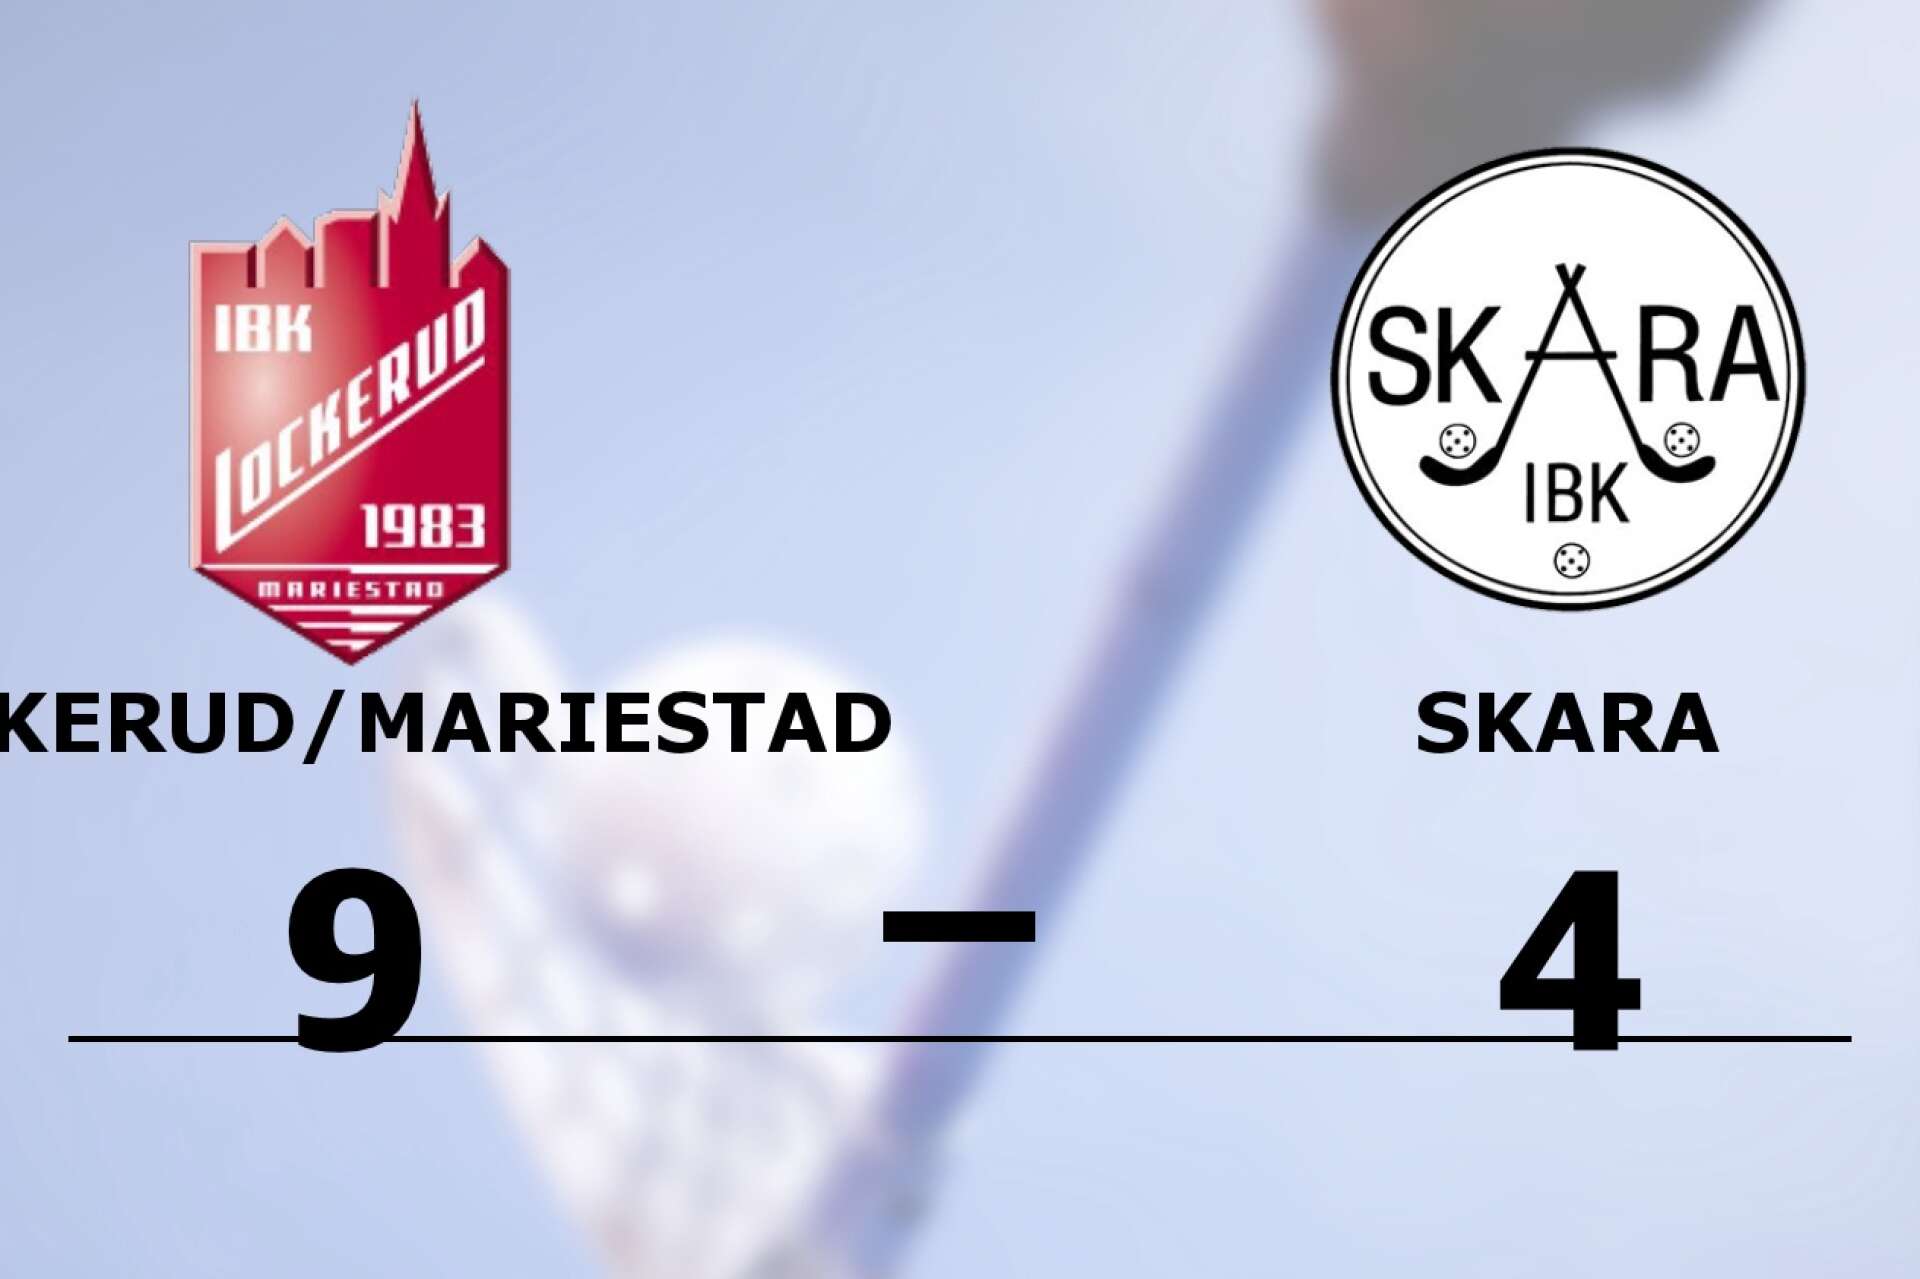 IBK Lockerud Mariestad vann mot Skara IBK